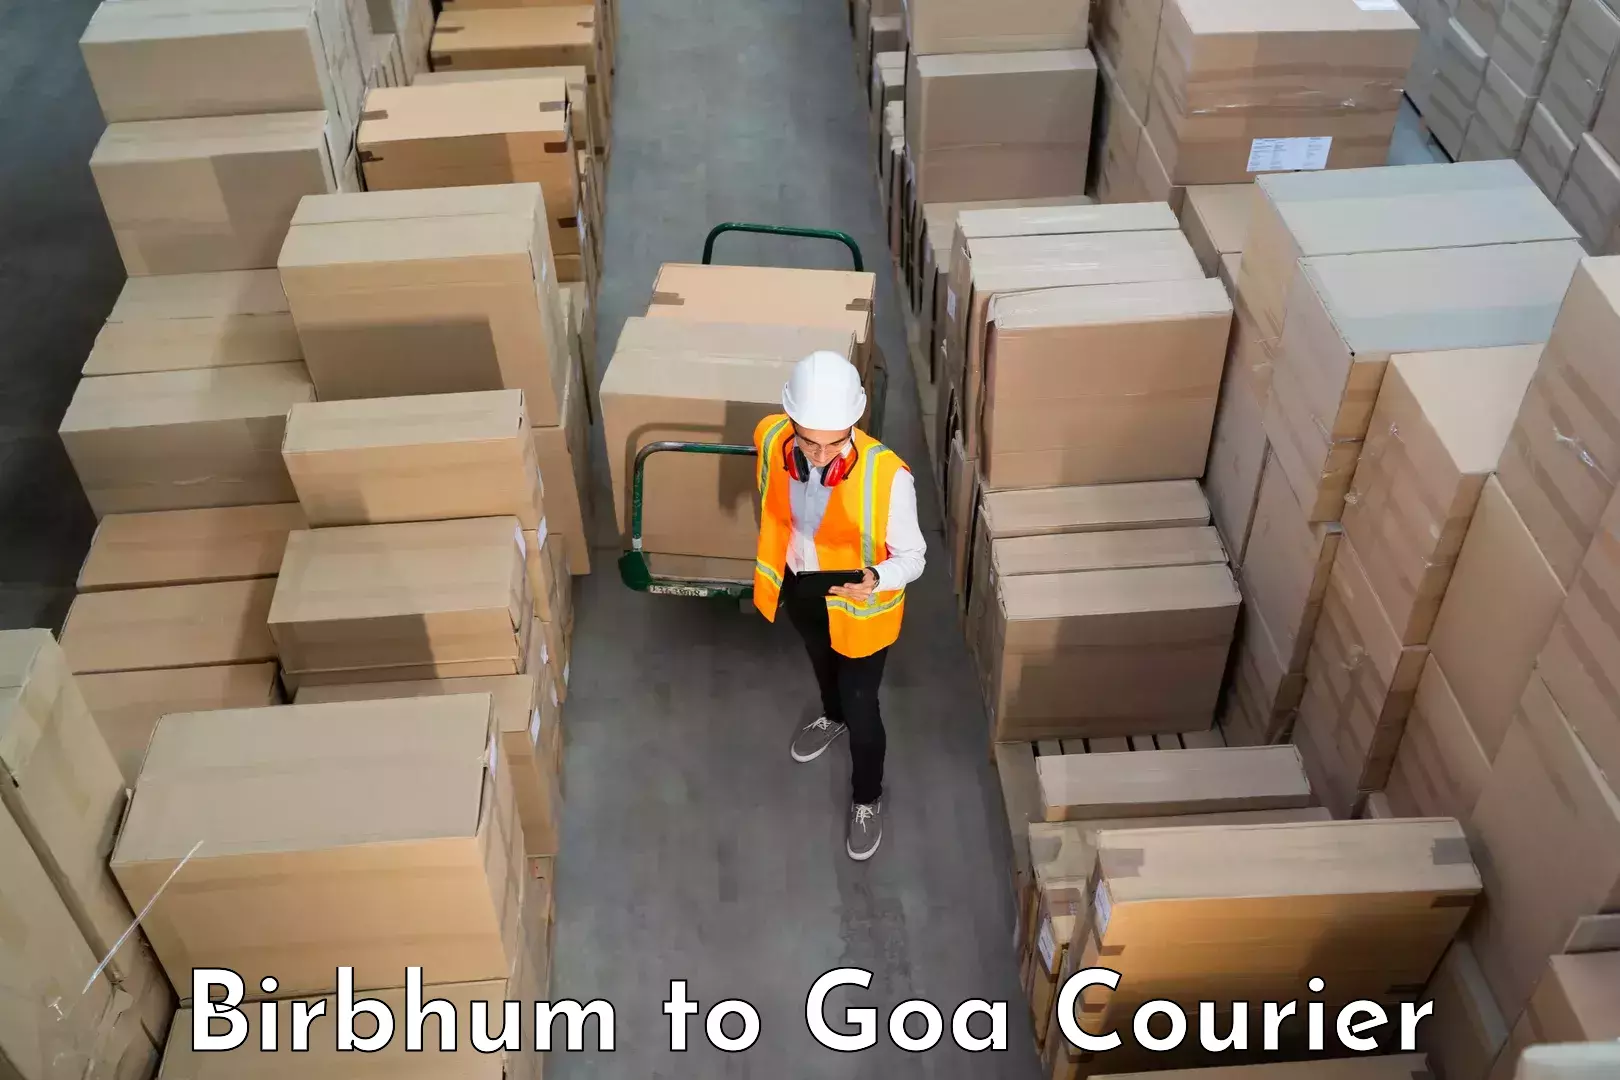 Furniture transport professionals Birbhum to Goa